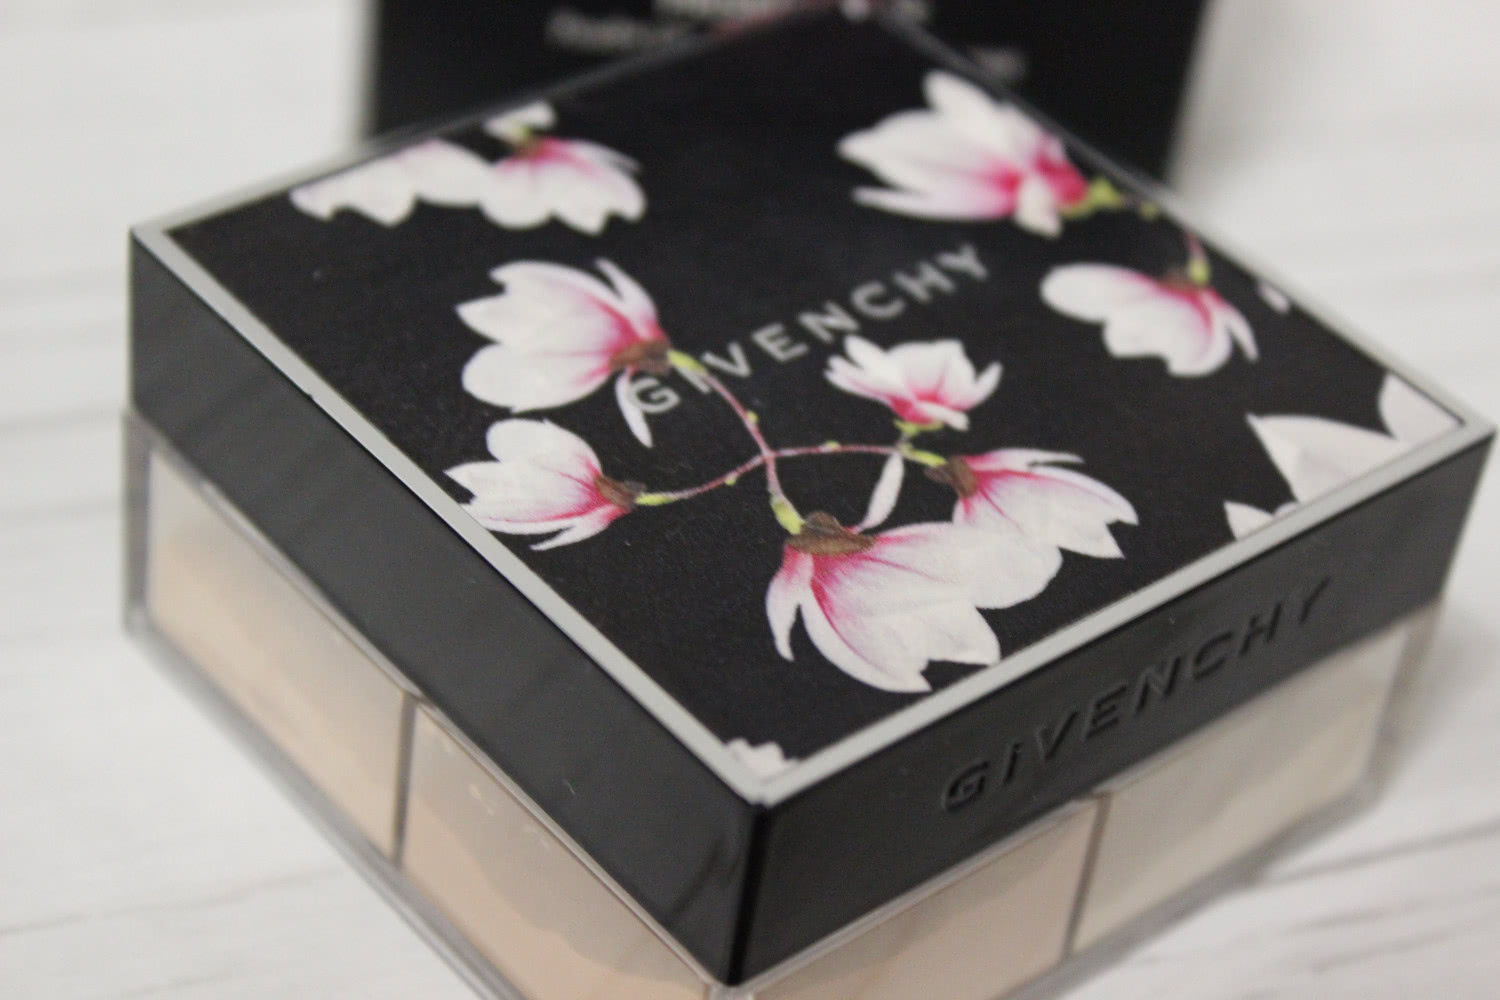 Givenchy Prisme Libre Loose Powder Magnolia Makeup Collection Spring Summer 2016